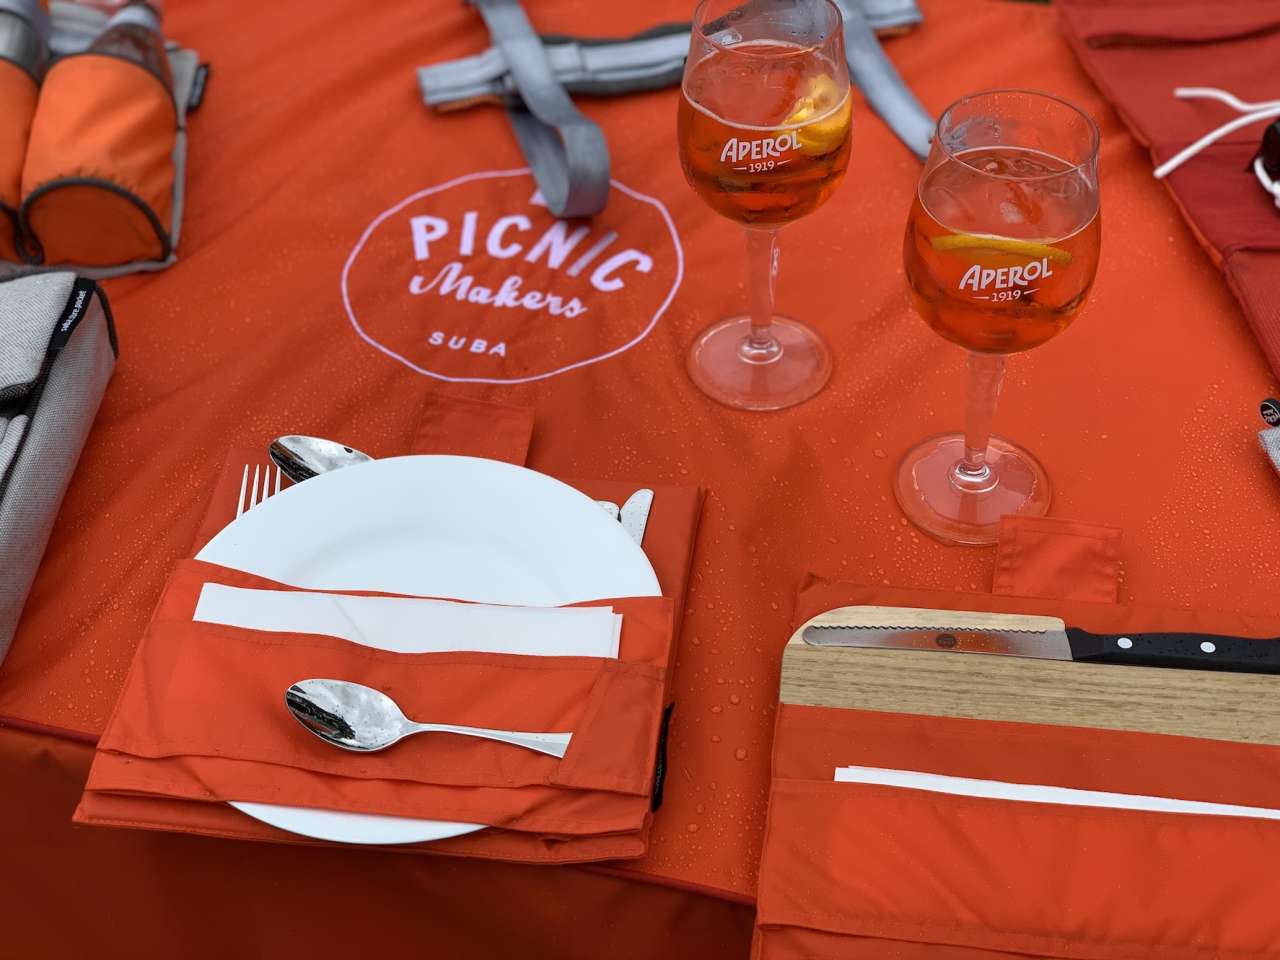 Suba Picnic-Makers Von der Einschulung über Hochzeiten bis zu Geburtstagen – Picknick zu jeder Gelegenheit